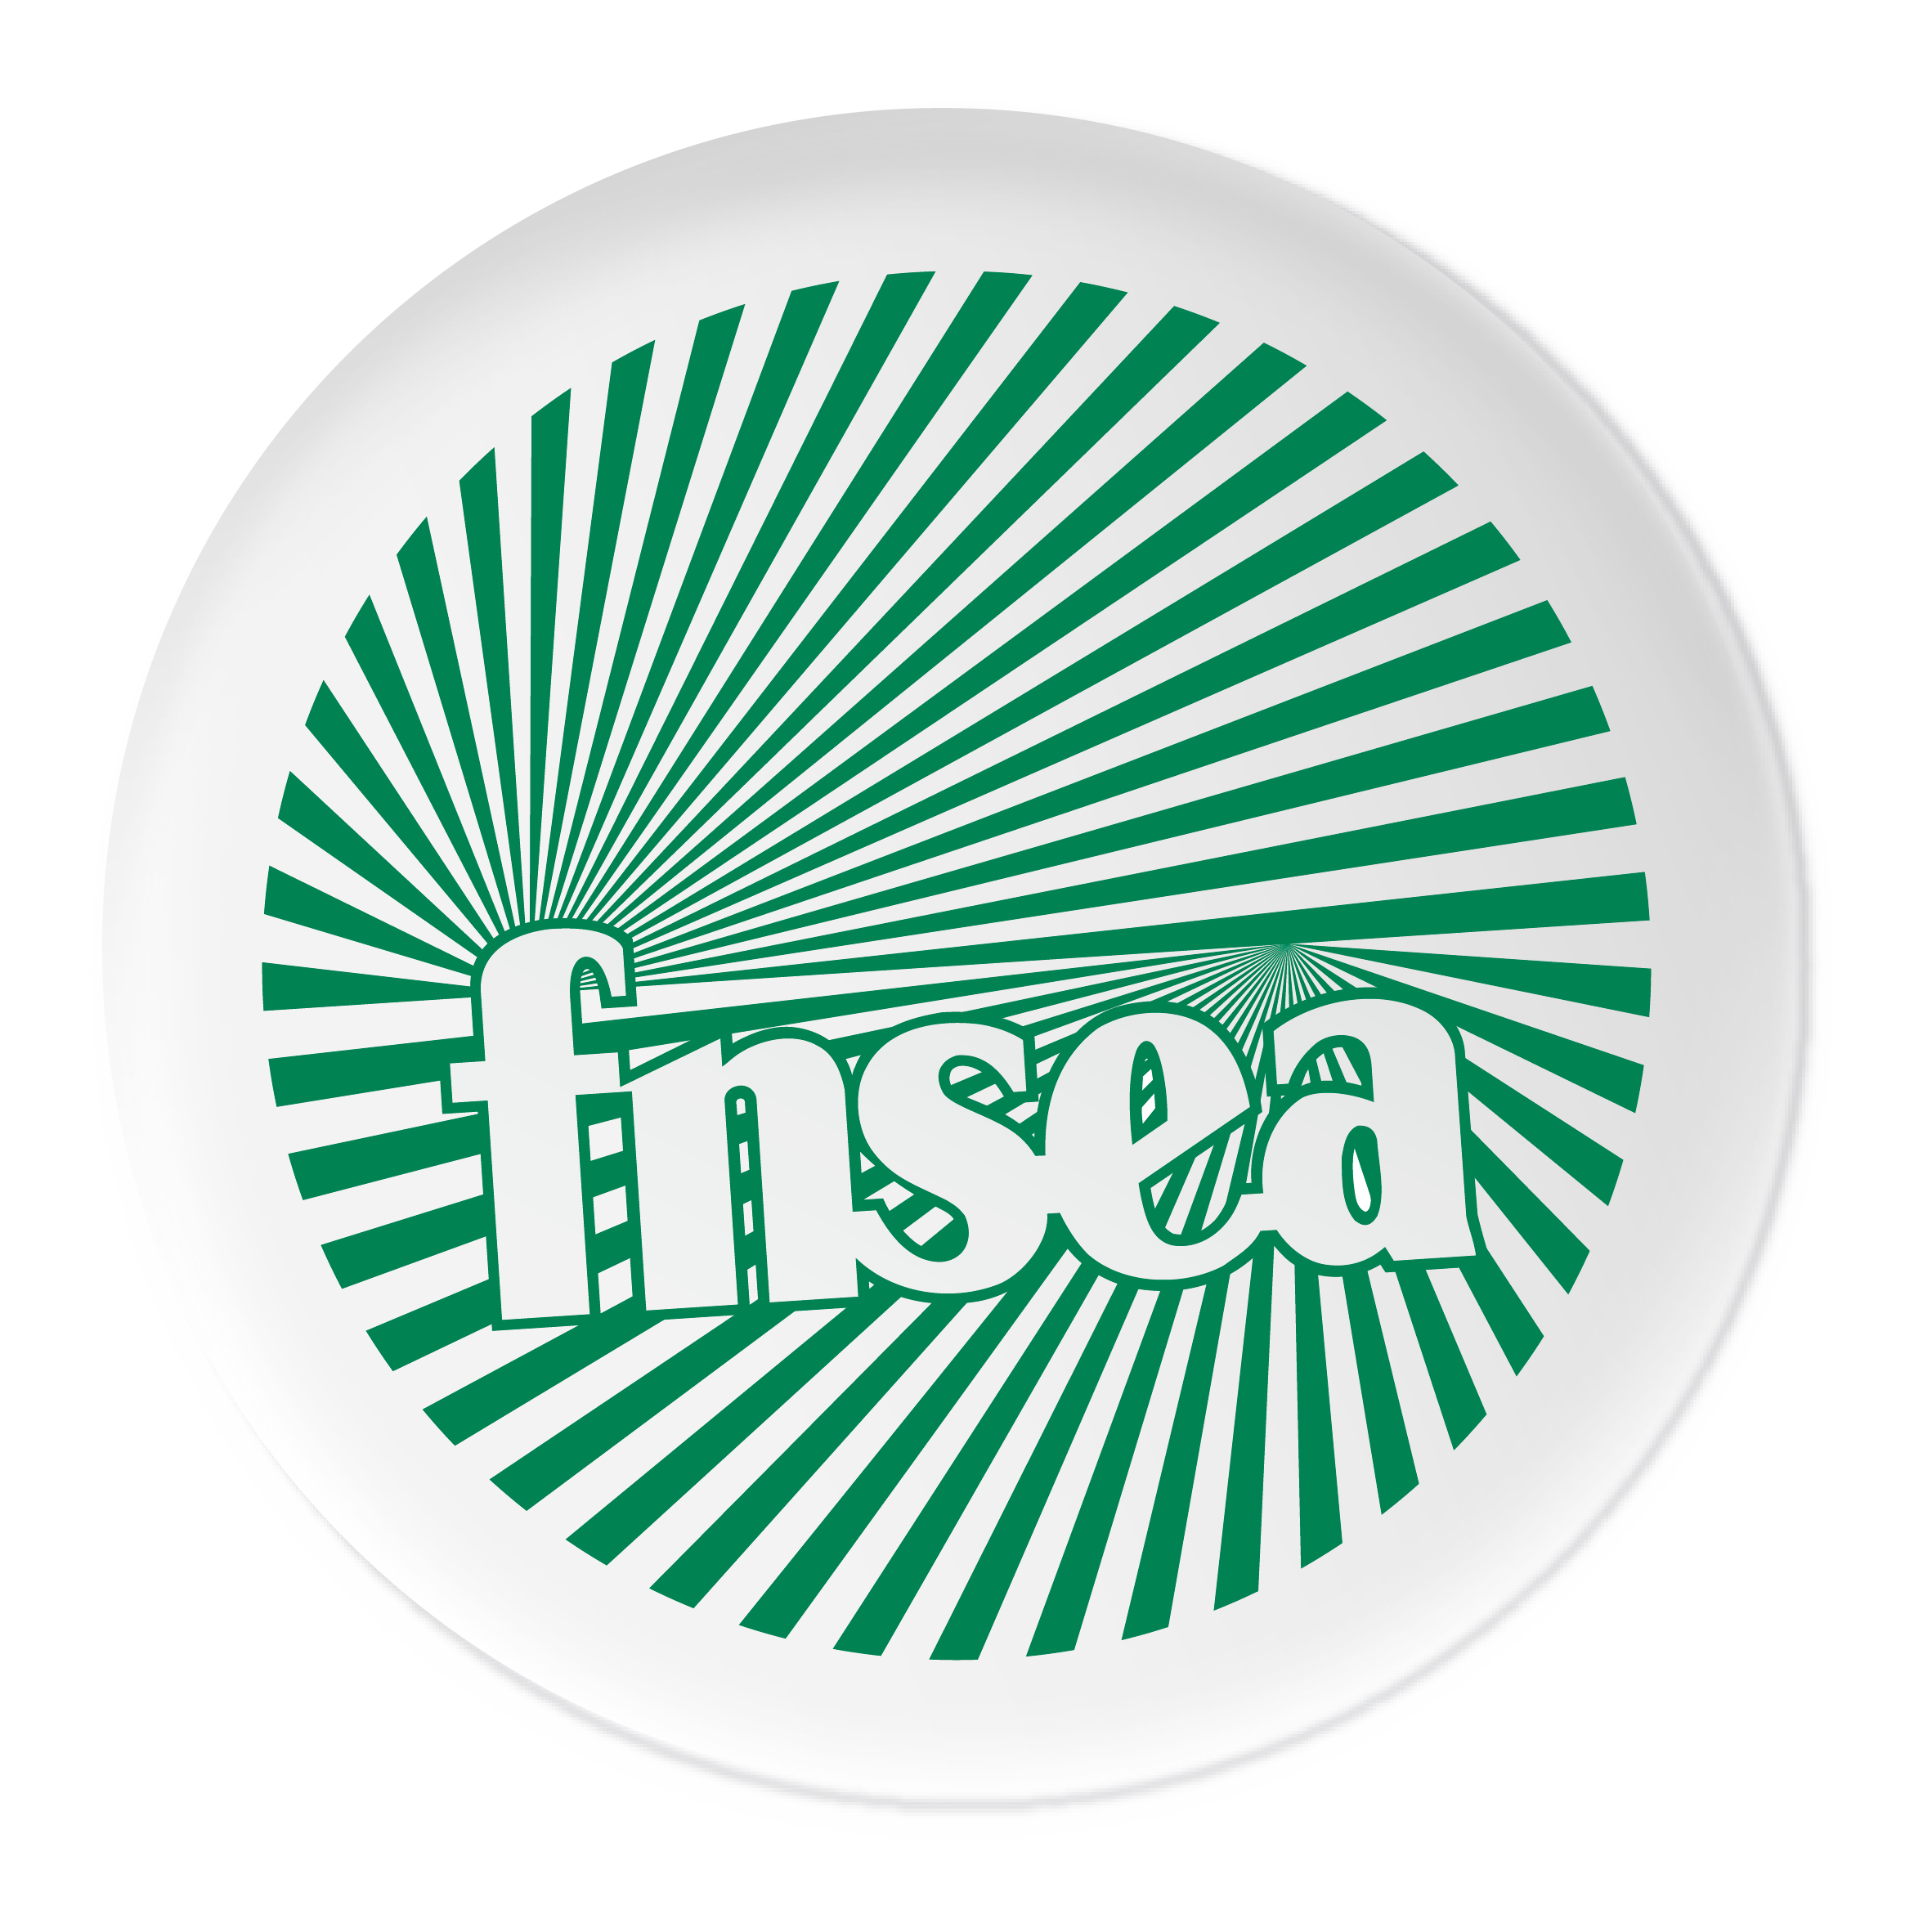 Logo FNSEA